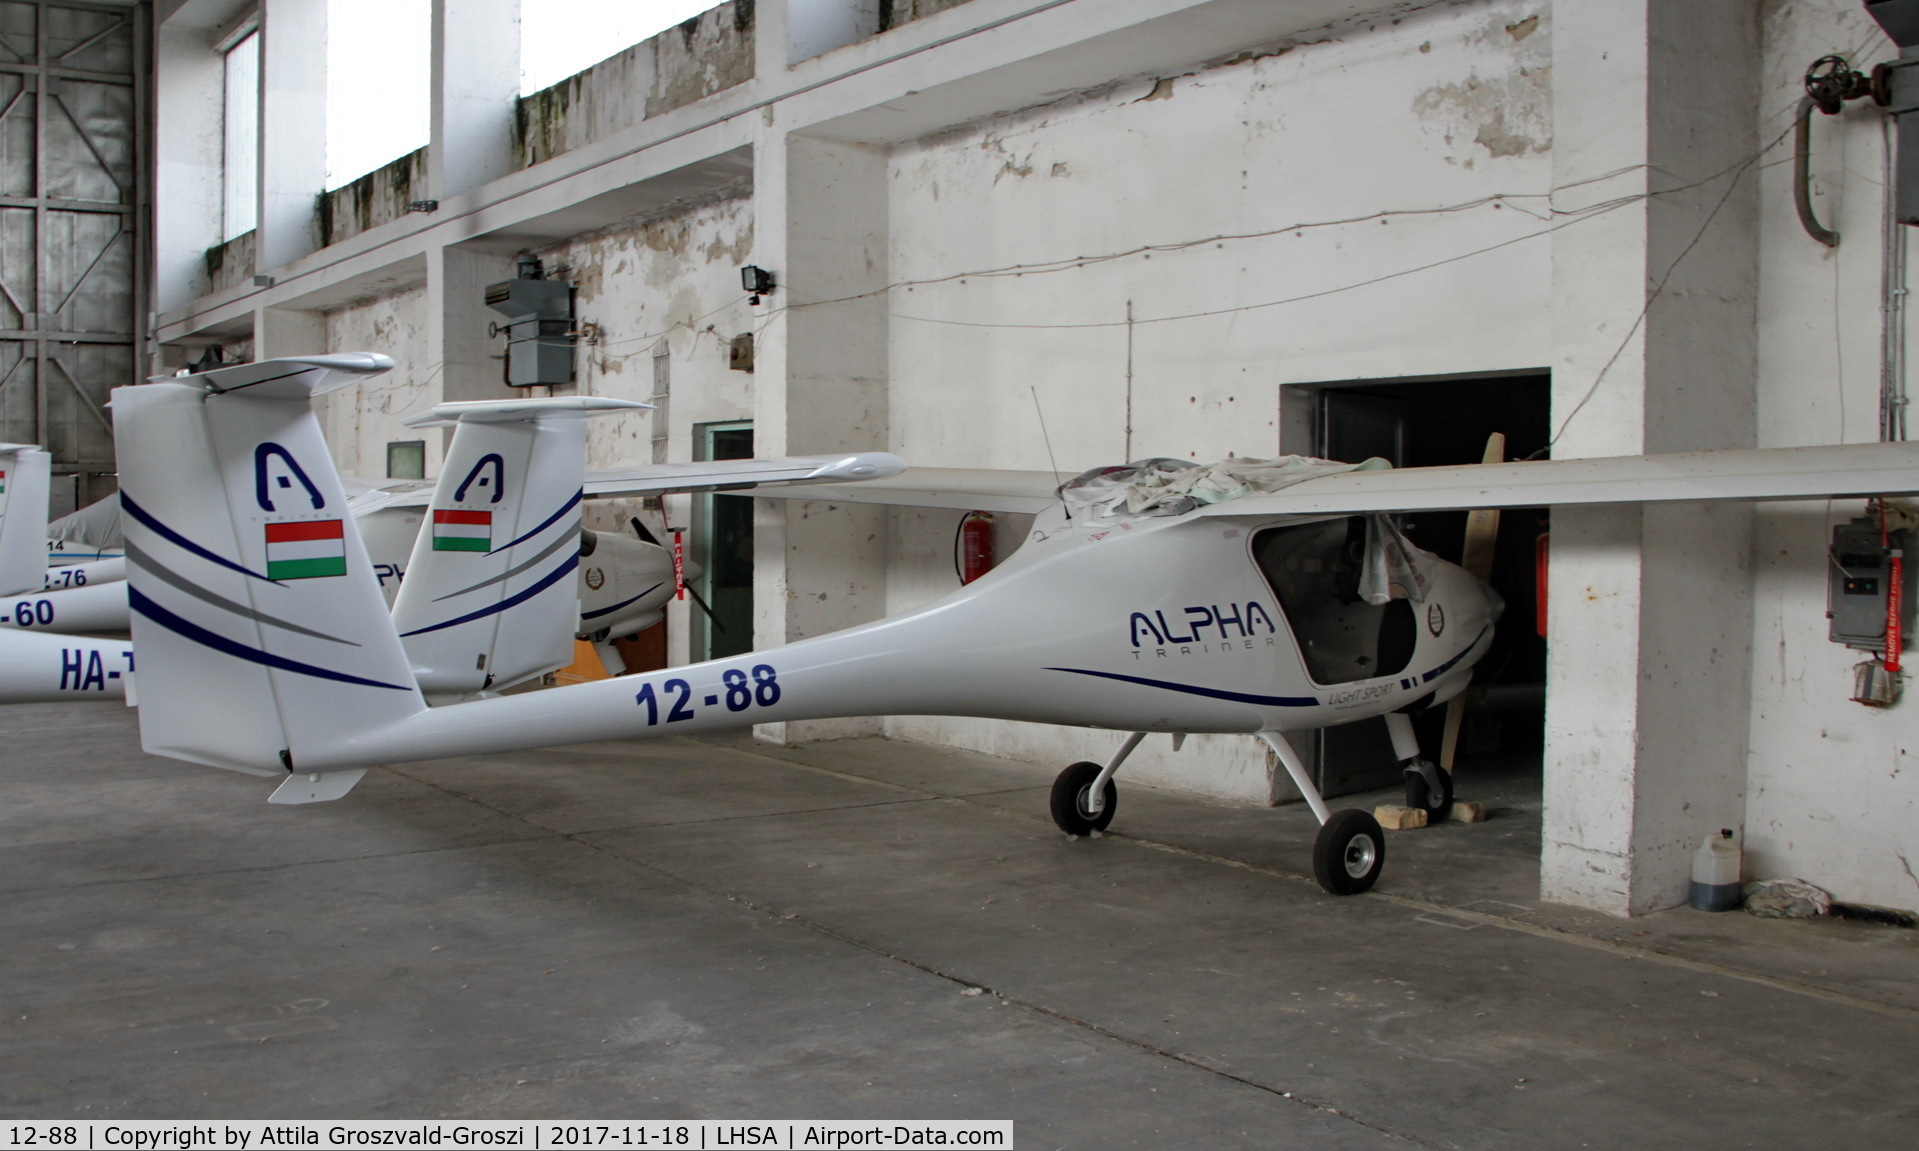 12-88, 2015 Pipistrel Alpha Trainer C/N 728 AT 912, Szentkirályszabadja Airport, ex Military Air base, Hungary